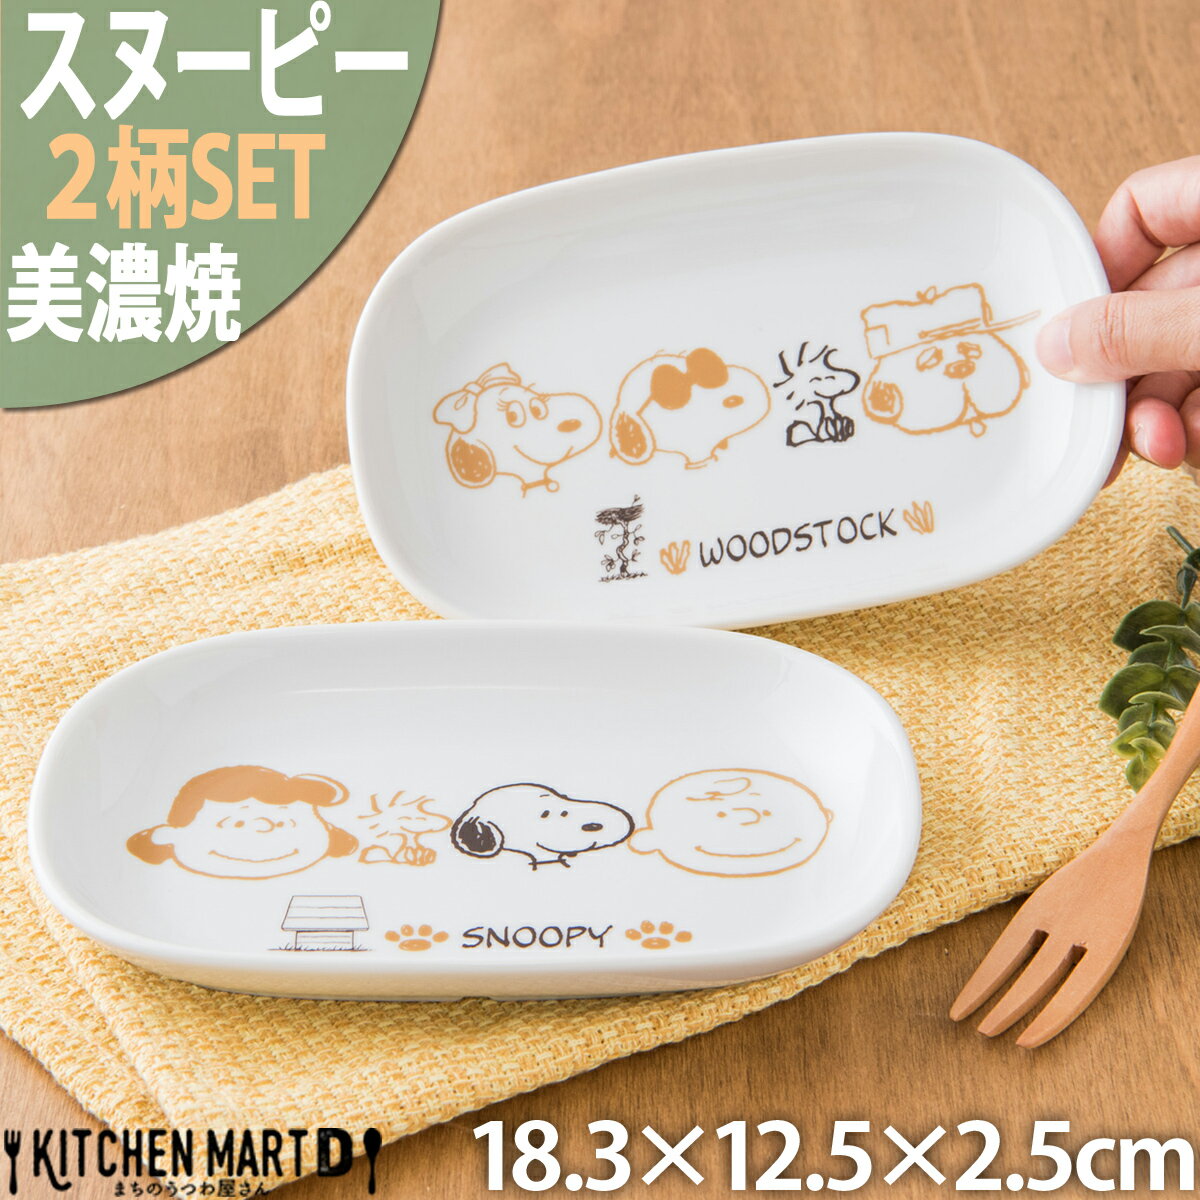 スヌーピー 食器 楕円 皿 ブラウンパル 2柄SET 18.3×12.5×2.5cm 340g 美濃焼 日本製 ピーナッツ オーバル プレート …